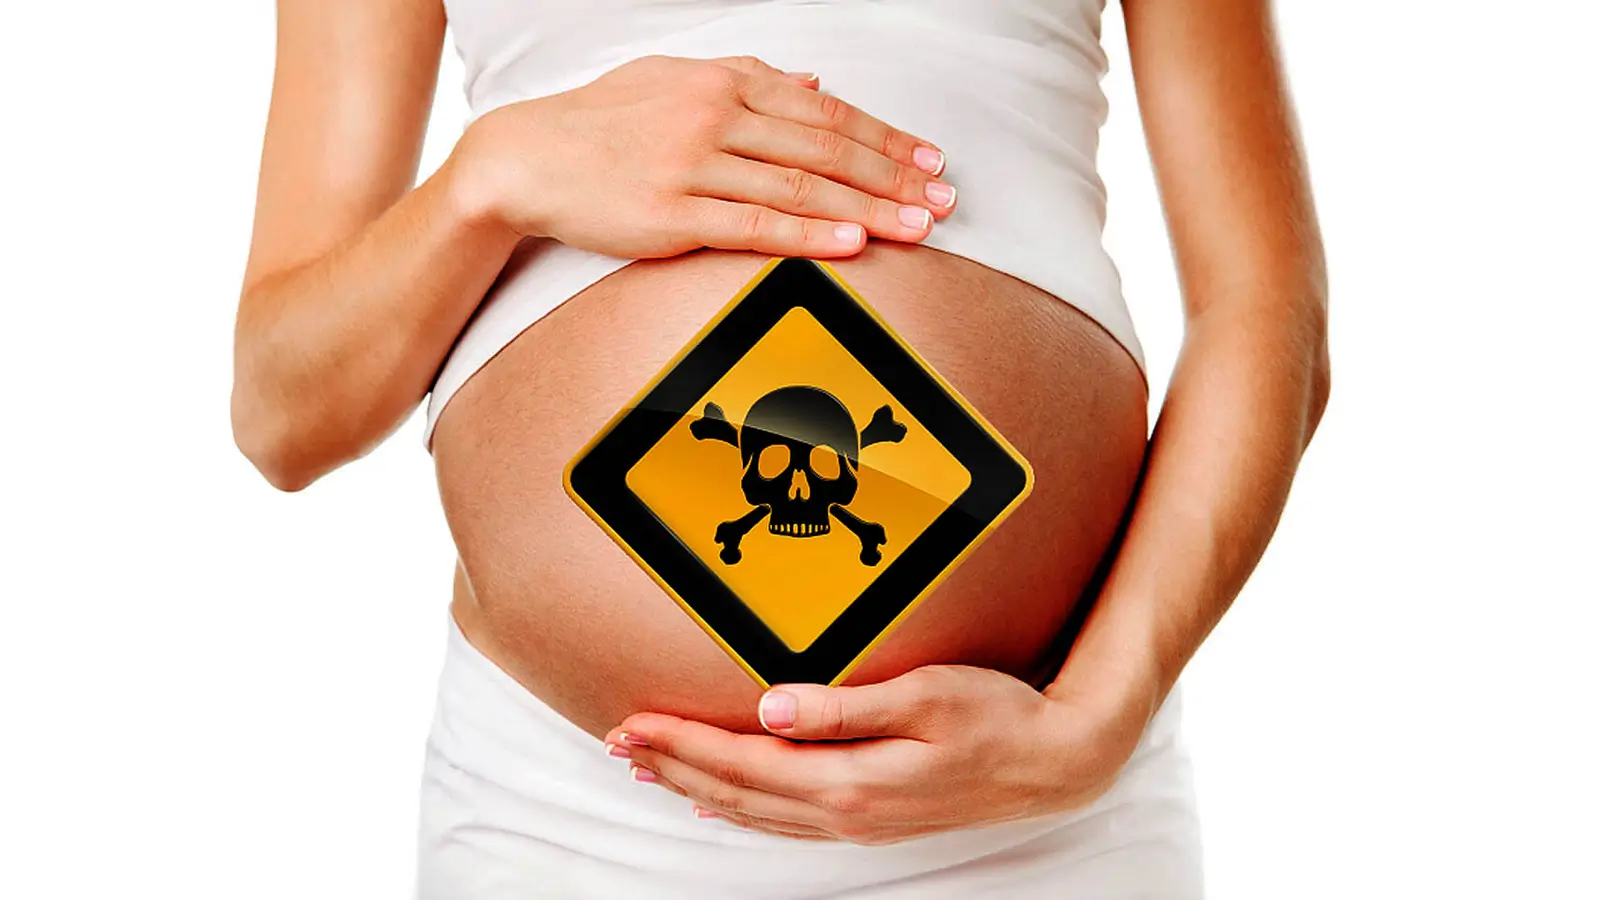 Desintoxicação e risco de exposição à toxicidade da gravidez - O argumento vegan